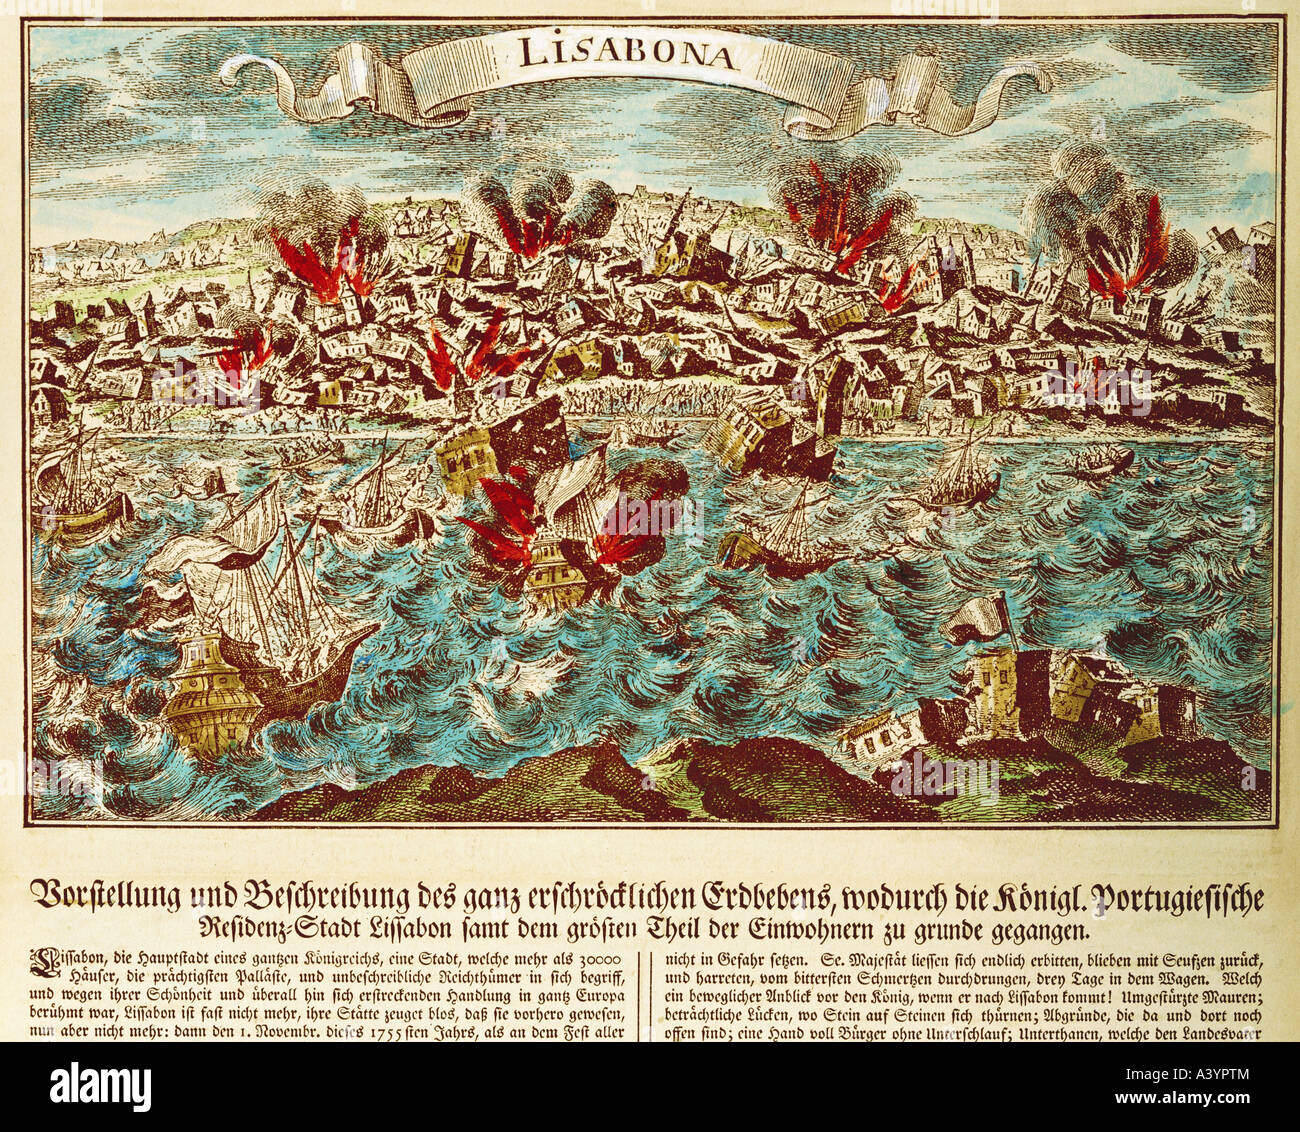 Naturkatastrophe/Katastrophe, Erdbeben, Lissabon, 1.11.1755, Artist's Urheberrecht nicht geklärt zu werden. Stockfoto